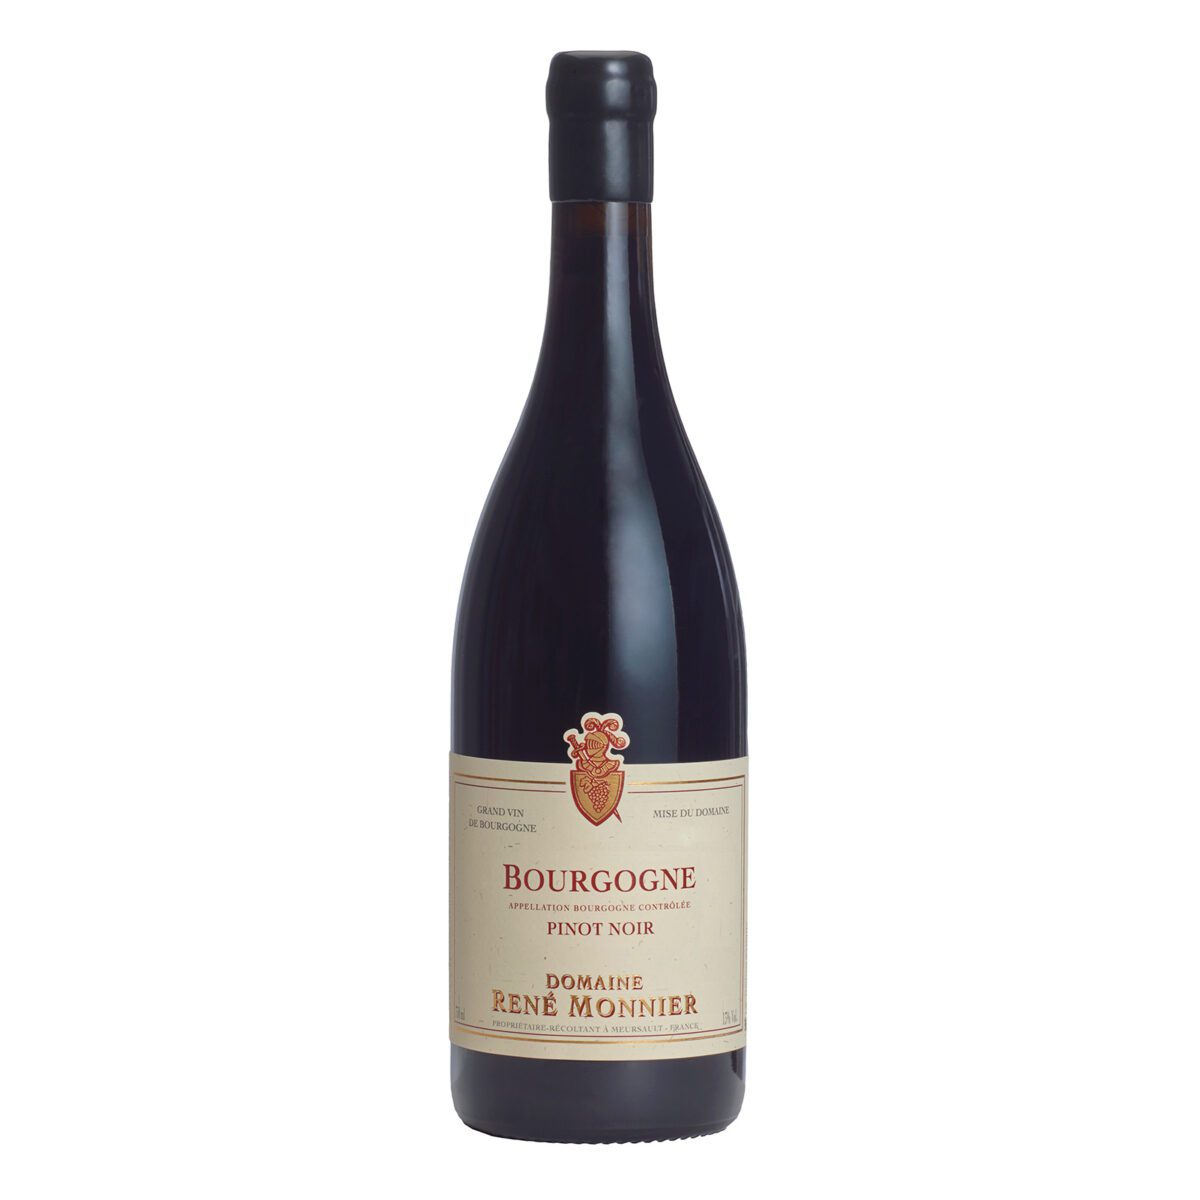 Bourgogne Pinot Noir, Domaine René Monnier